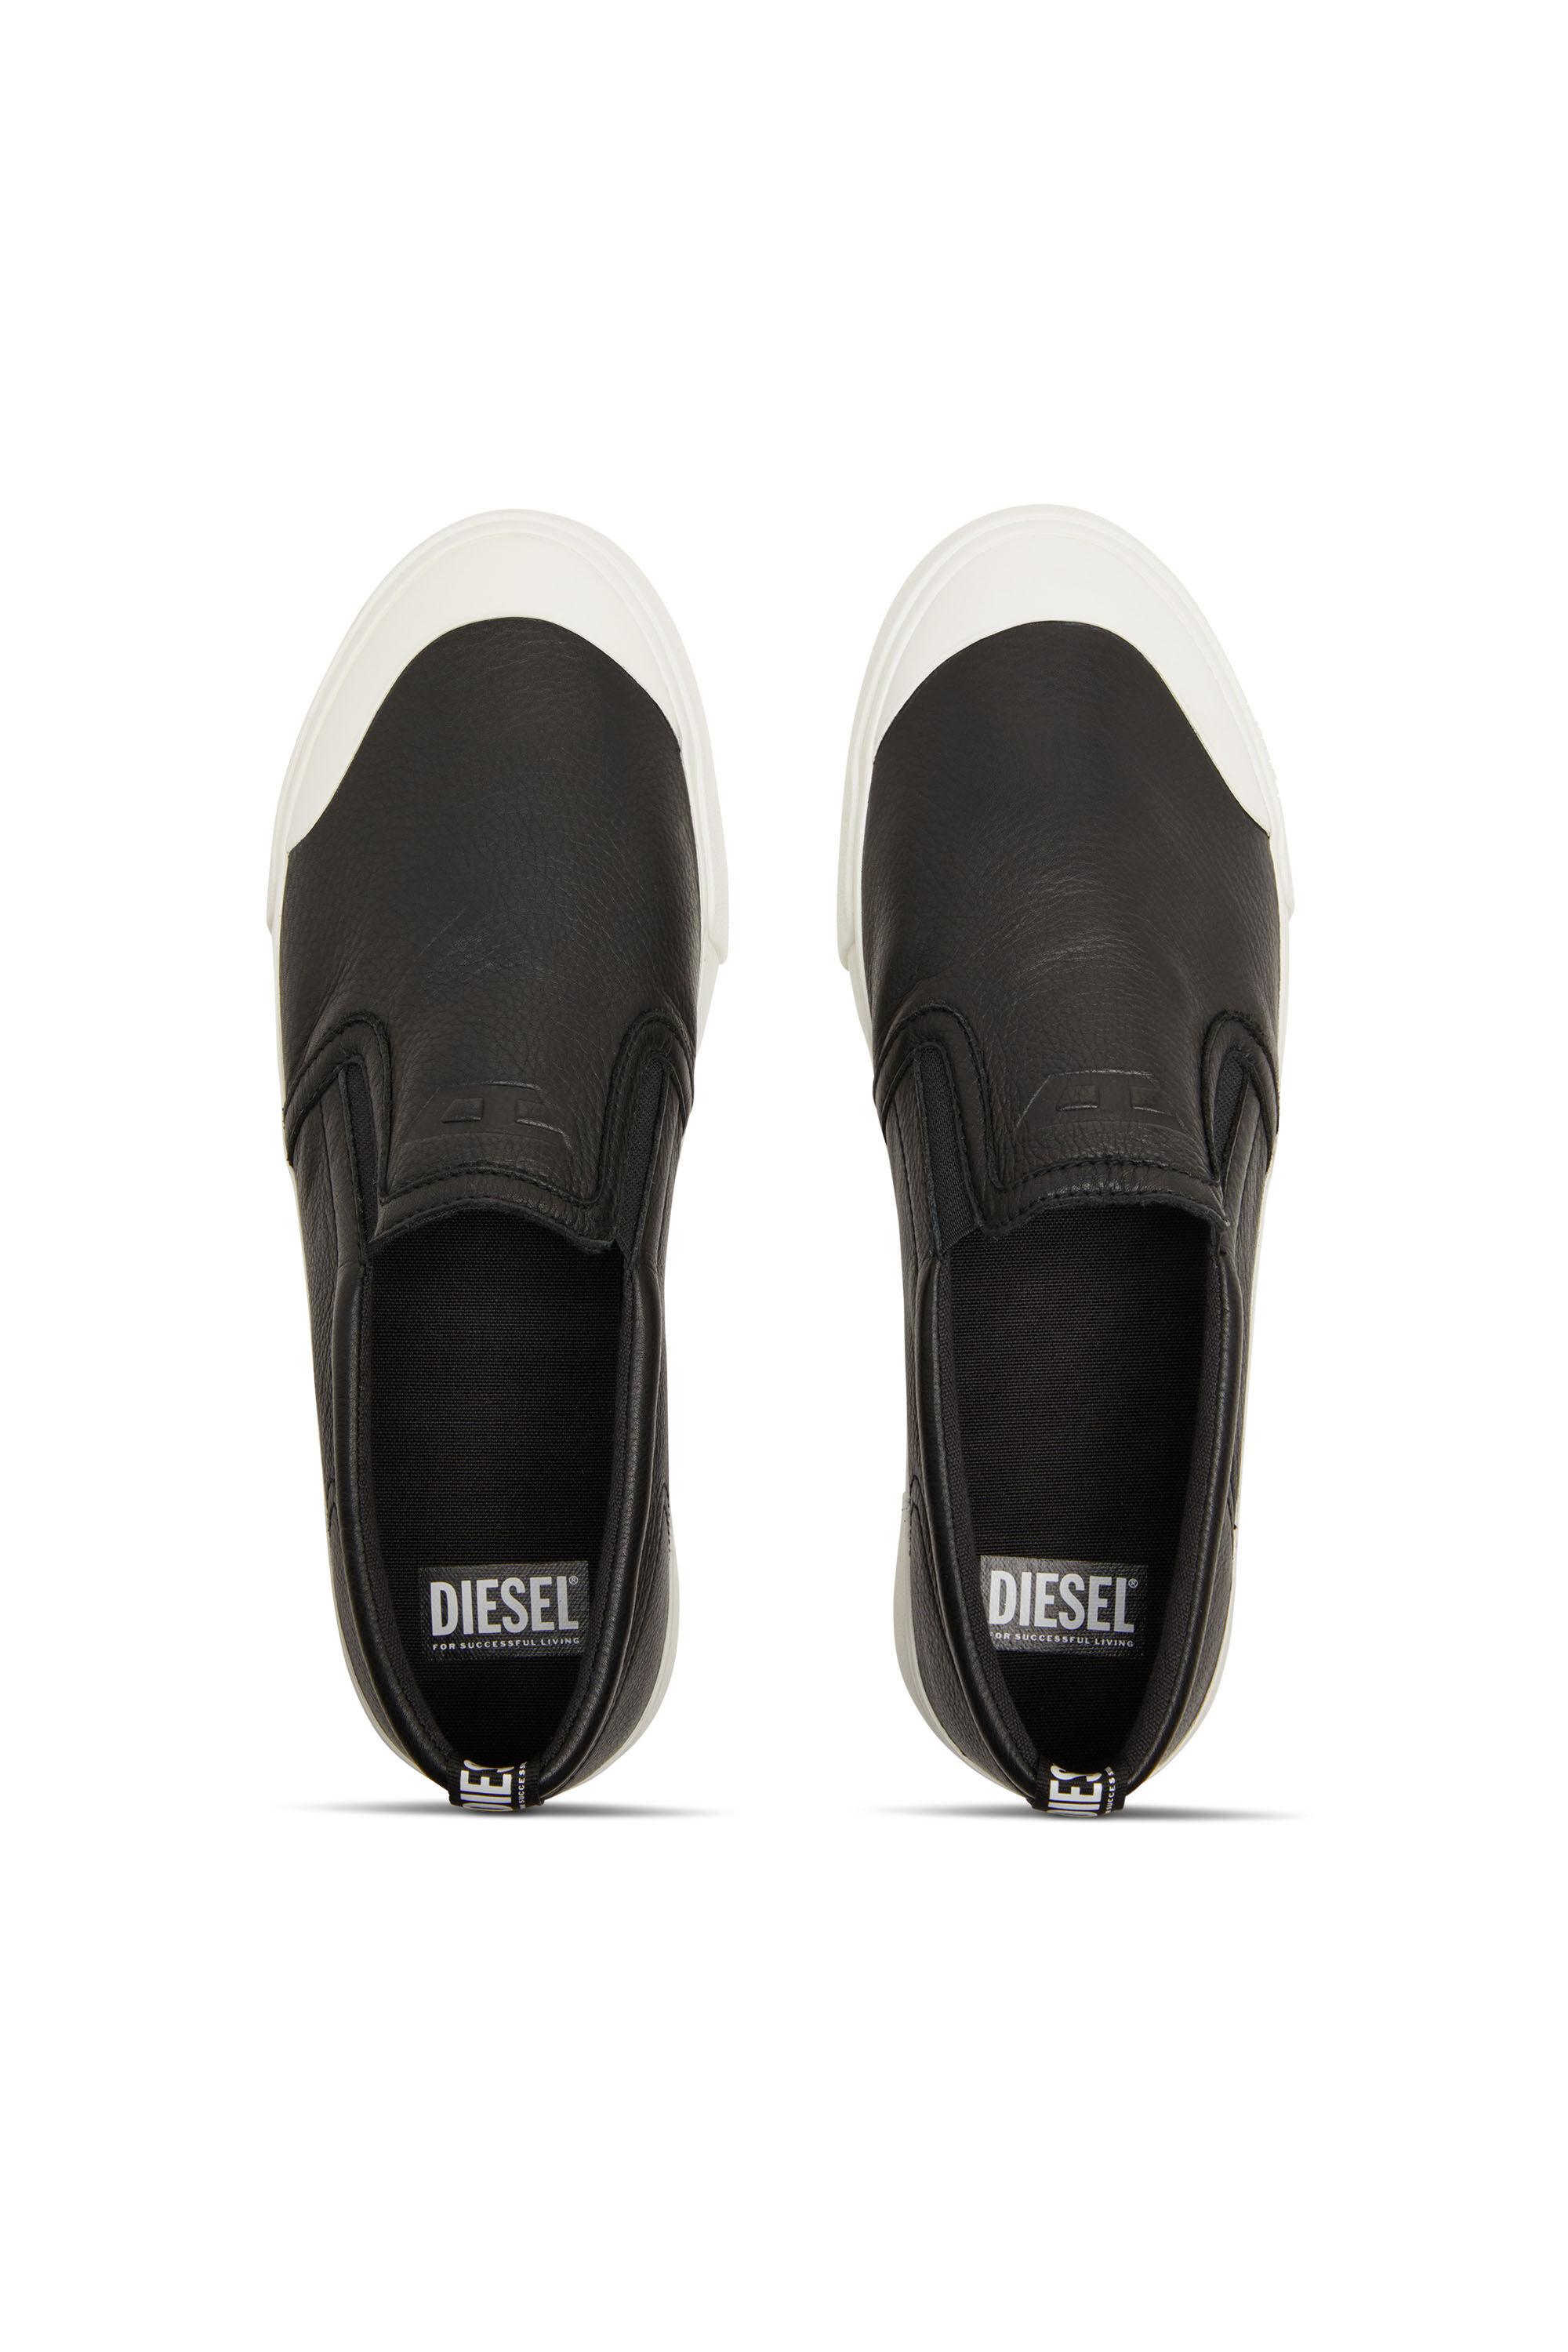 Diesel - S-ATHOS SLIP ON, Man S-Athos-Slip-on sneakers in plain leather in Black - Image 4